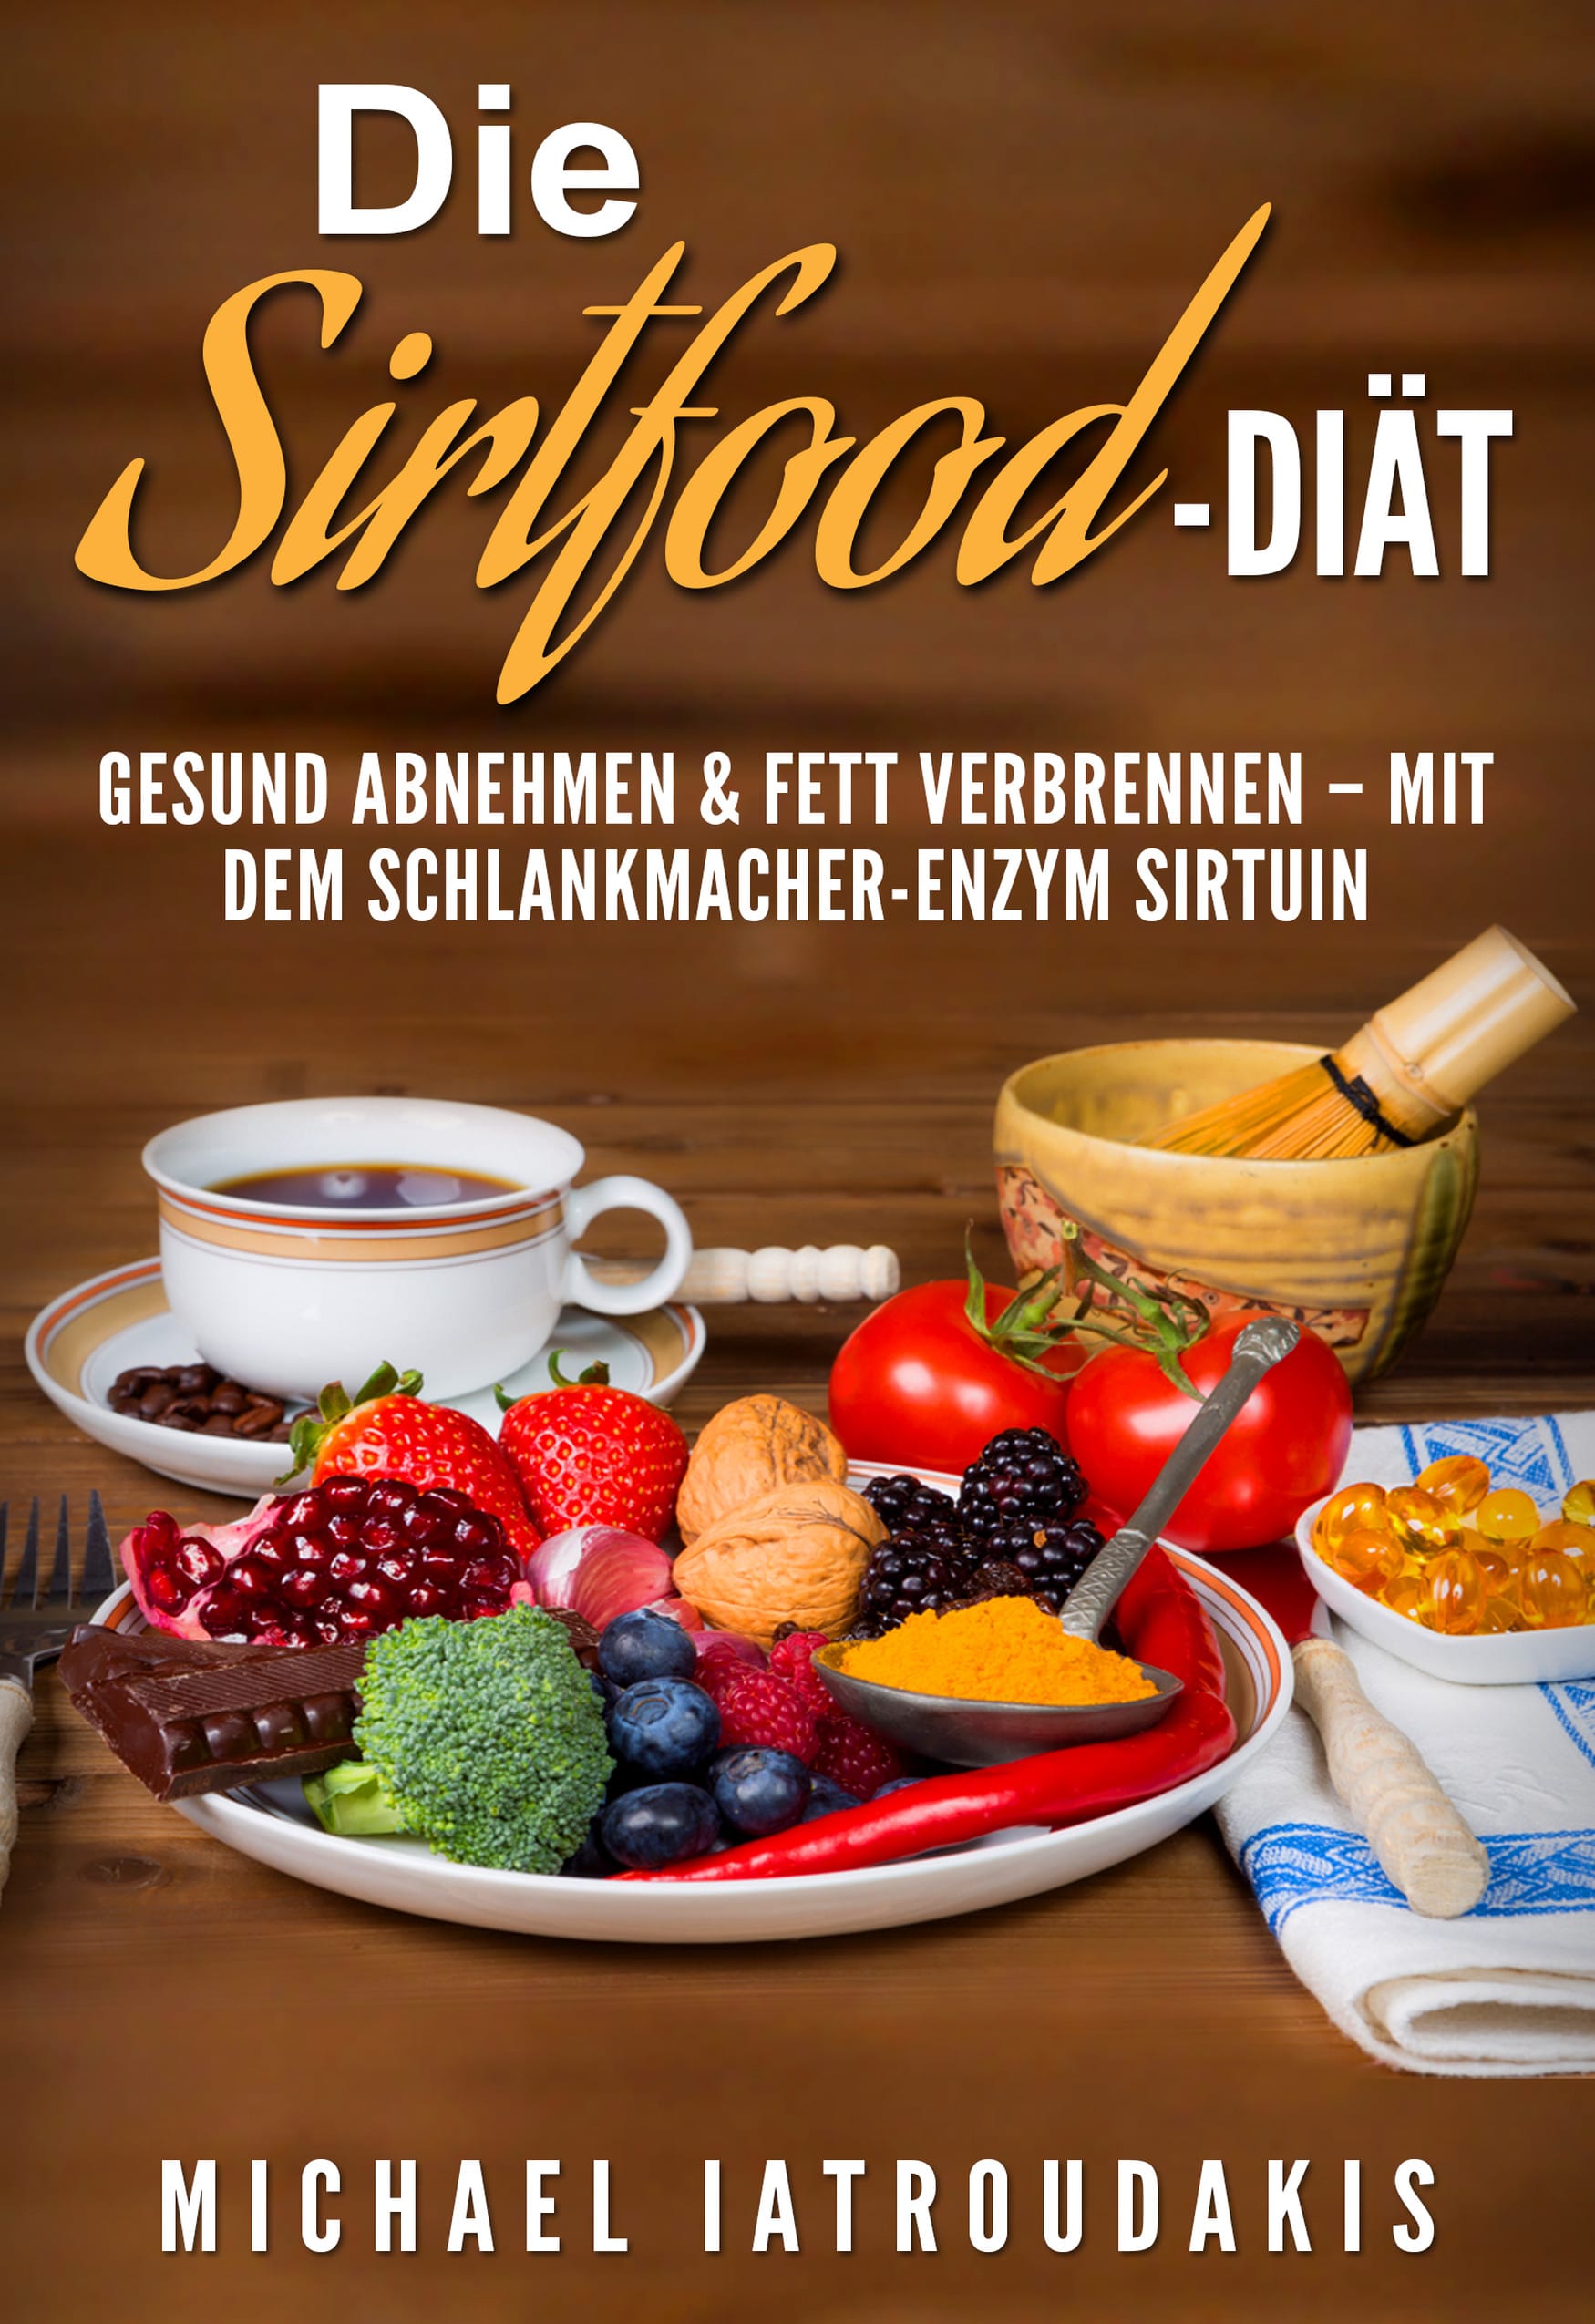 Sirtfood-Diät Plan